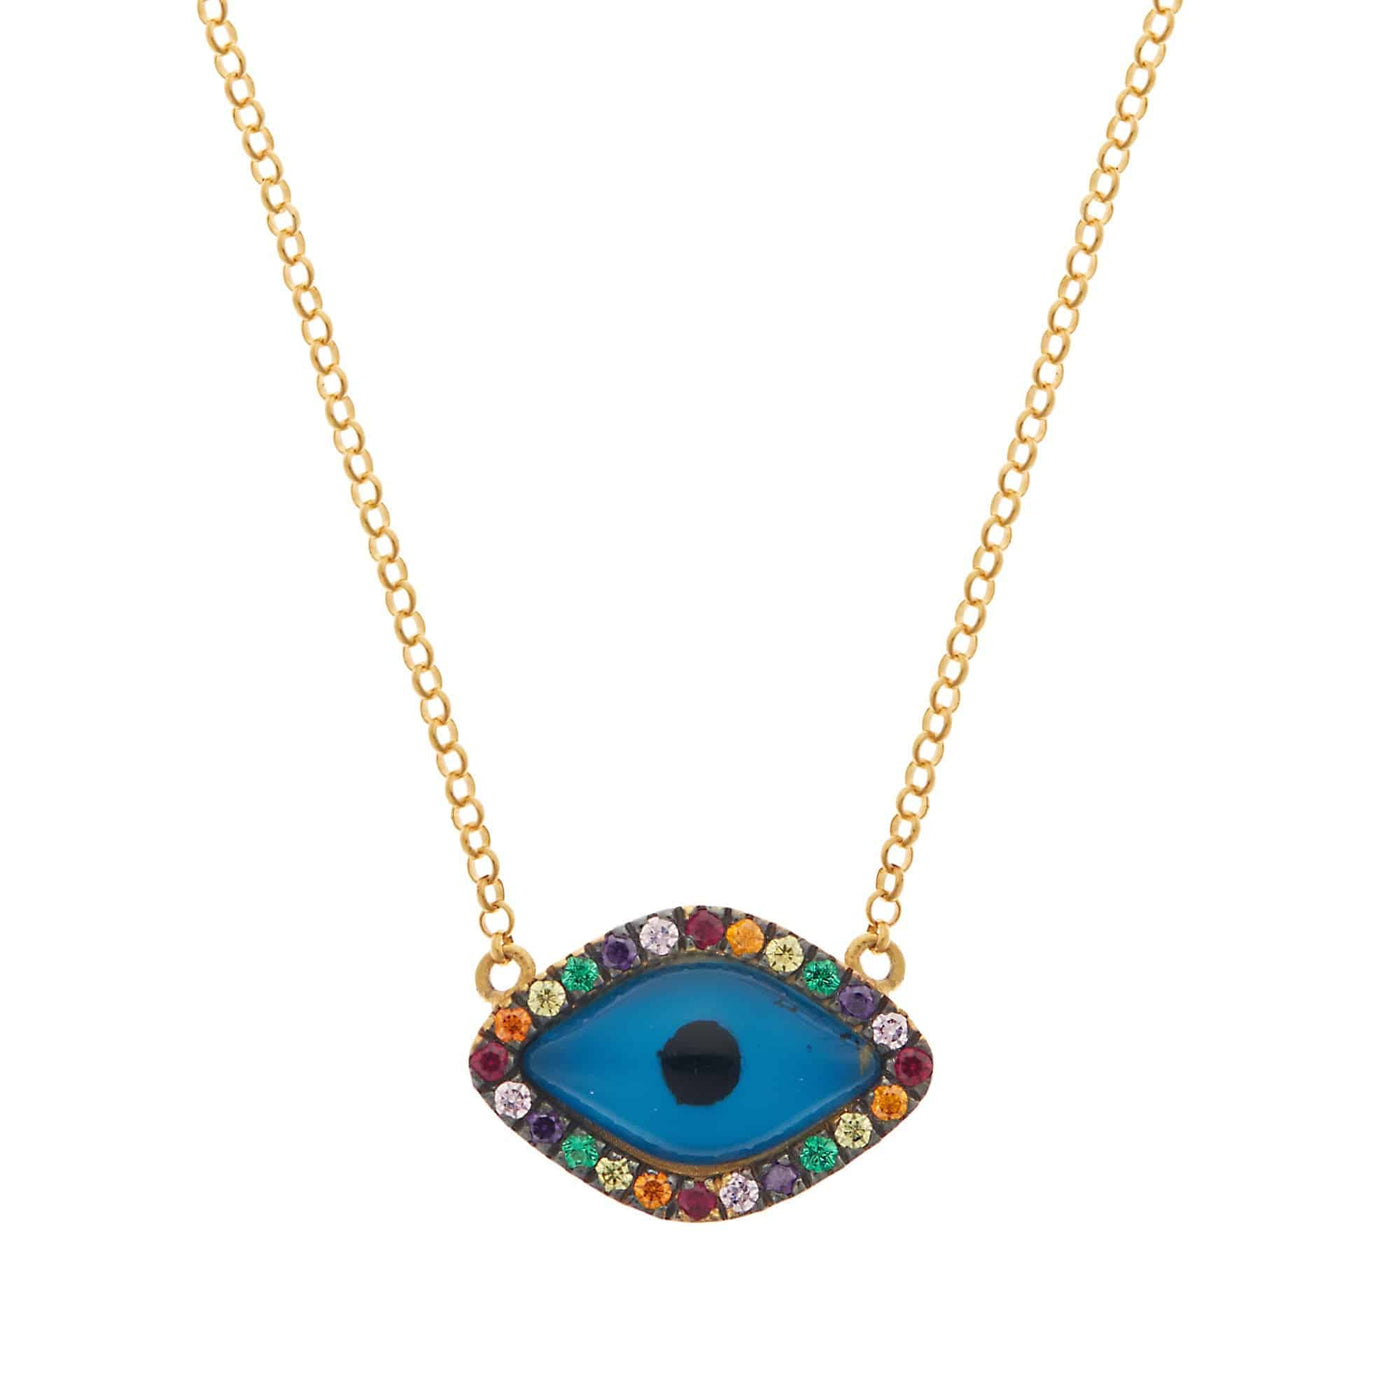 Oval Eye Rainbow Necklace - Eye M by Ileana Makri